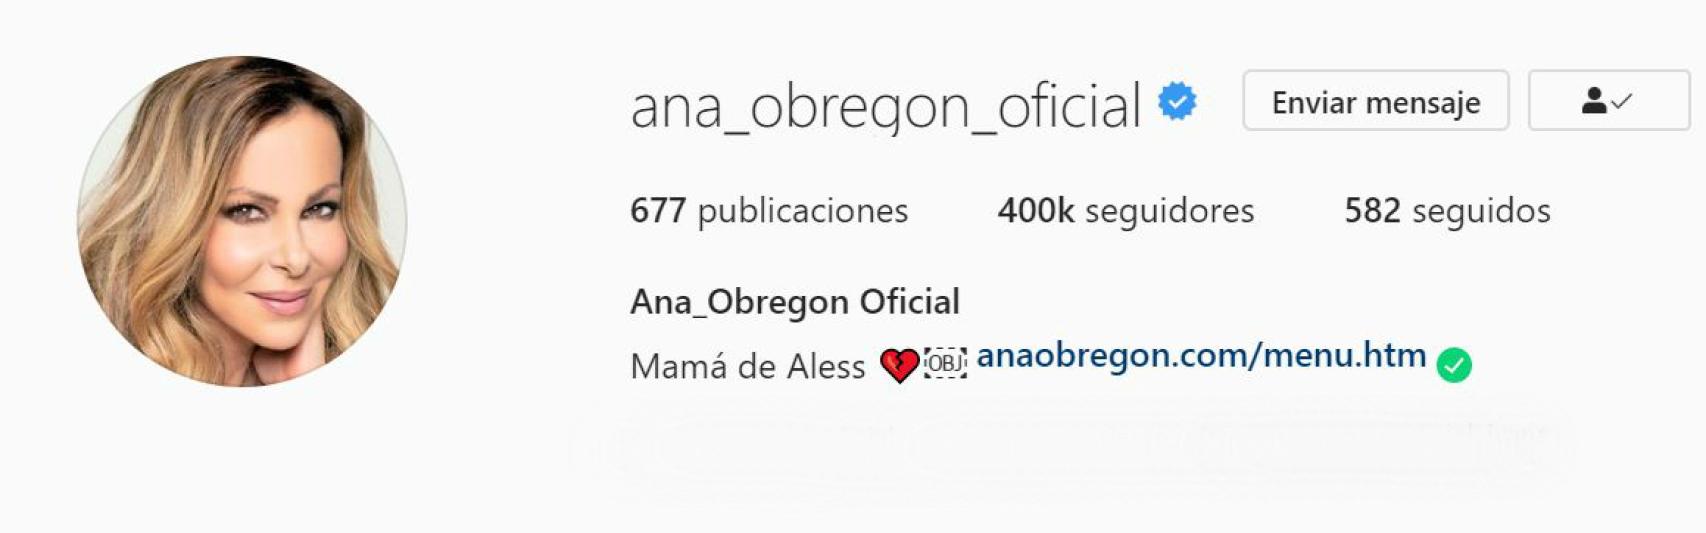 Captura de la nueva biografía de Ana Obregón en su perfil de Instagram.